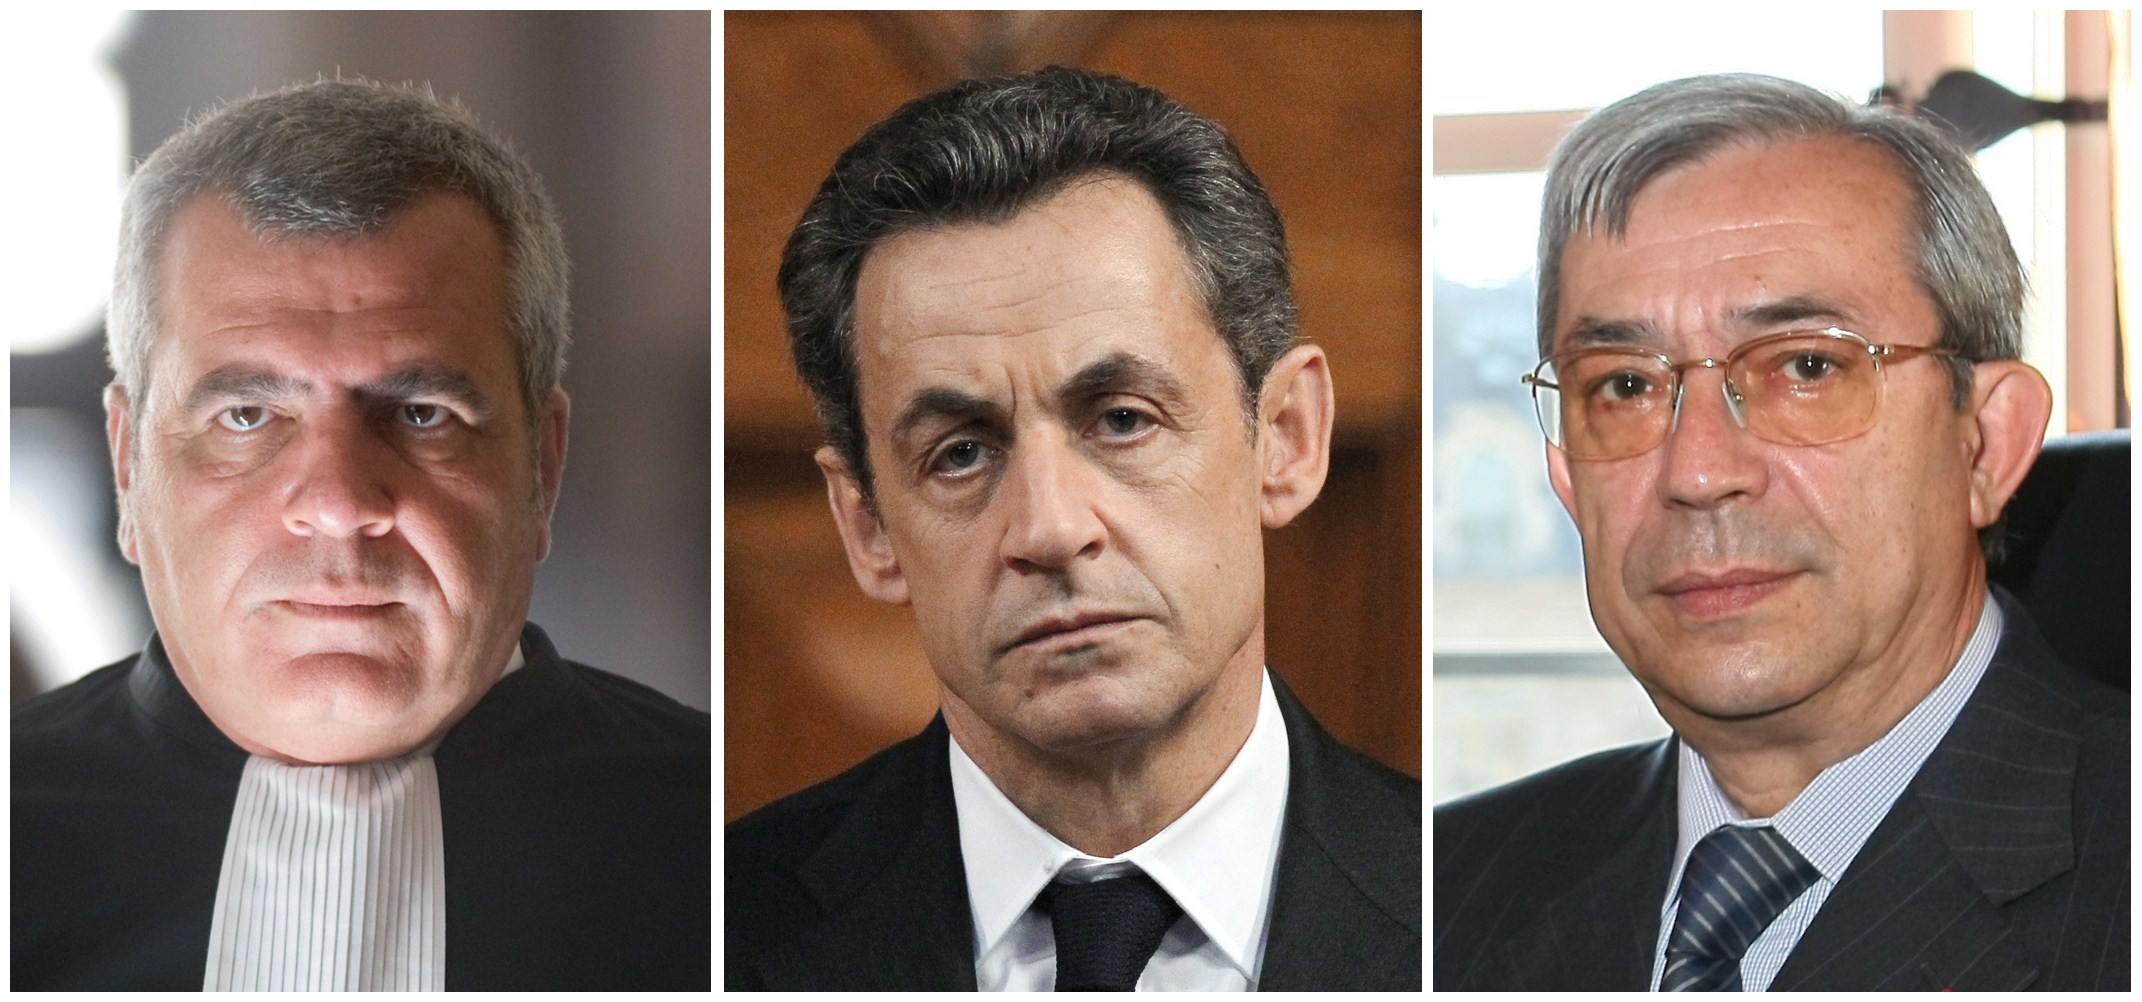 Nicolas Sarkozy a fost pus marti noapte sub acuzare pentru coruptie activa si trafic de influenta